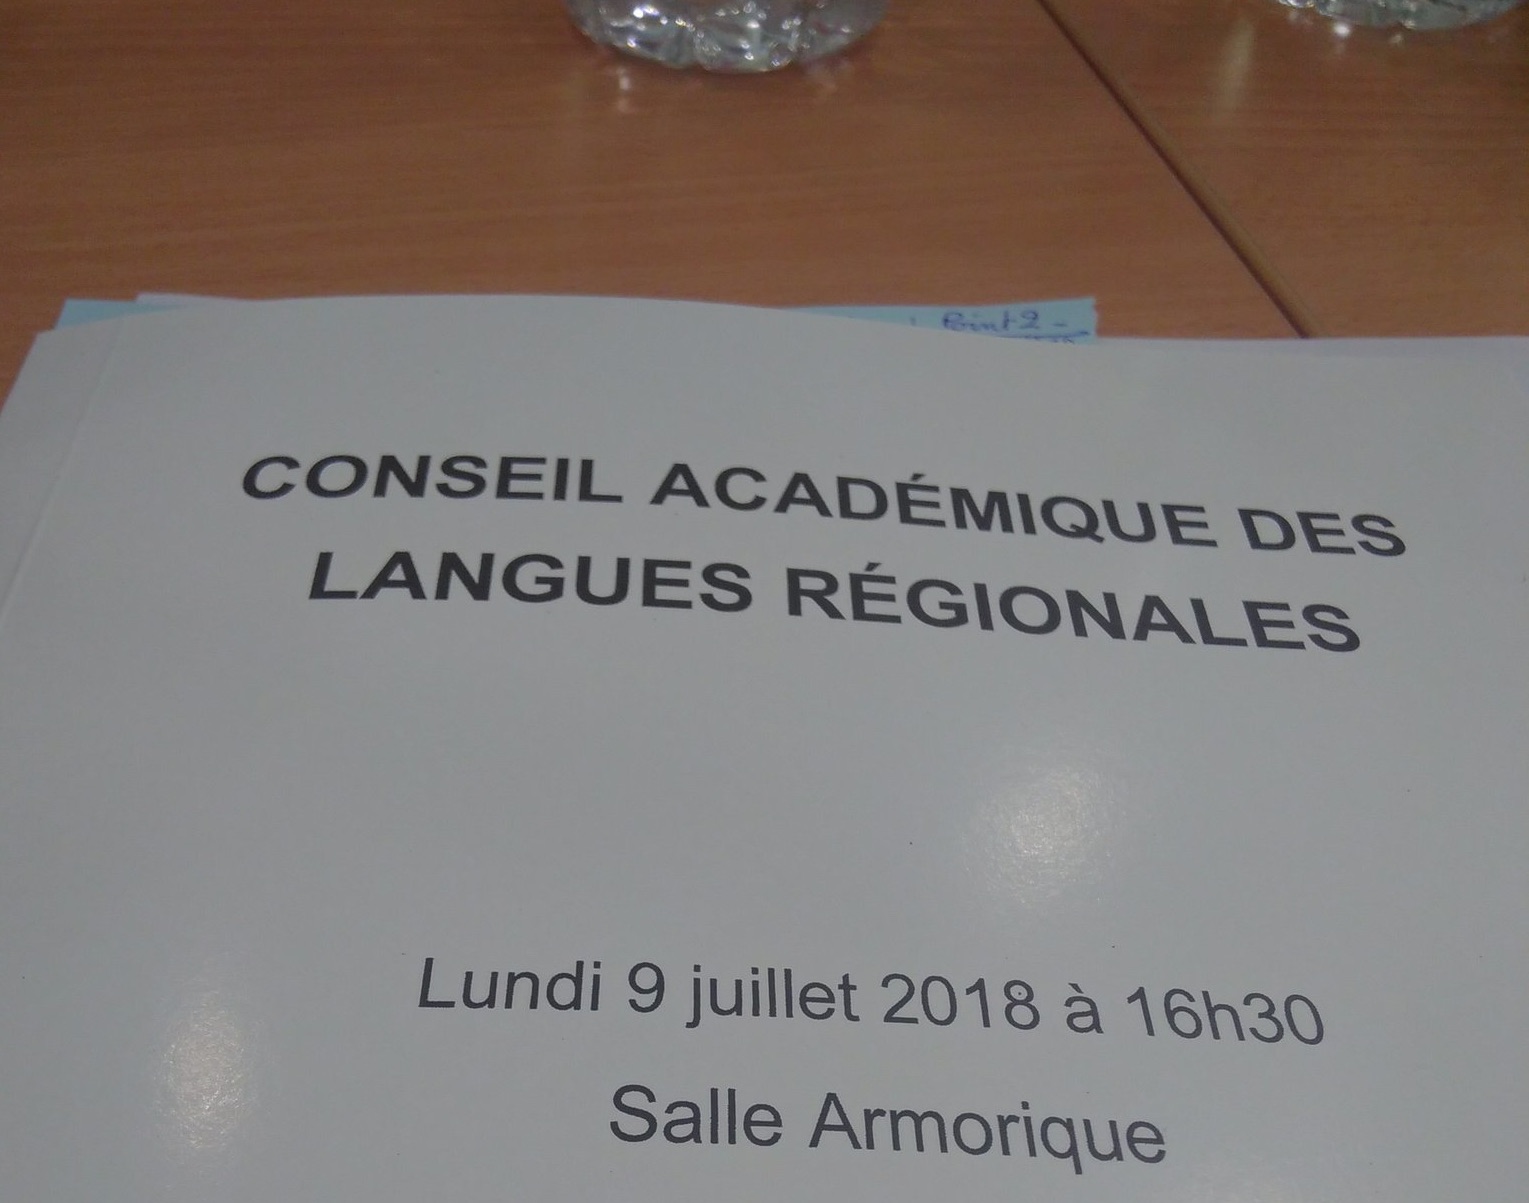 Comité académique des Langues Régionales (CALR) : bac et brevet en breton, déclaration commune Diwan, Div Yezh, Dihun, Kelennomp!, SGEN-CFDT Bretagne